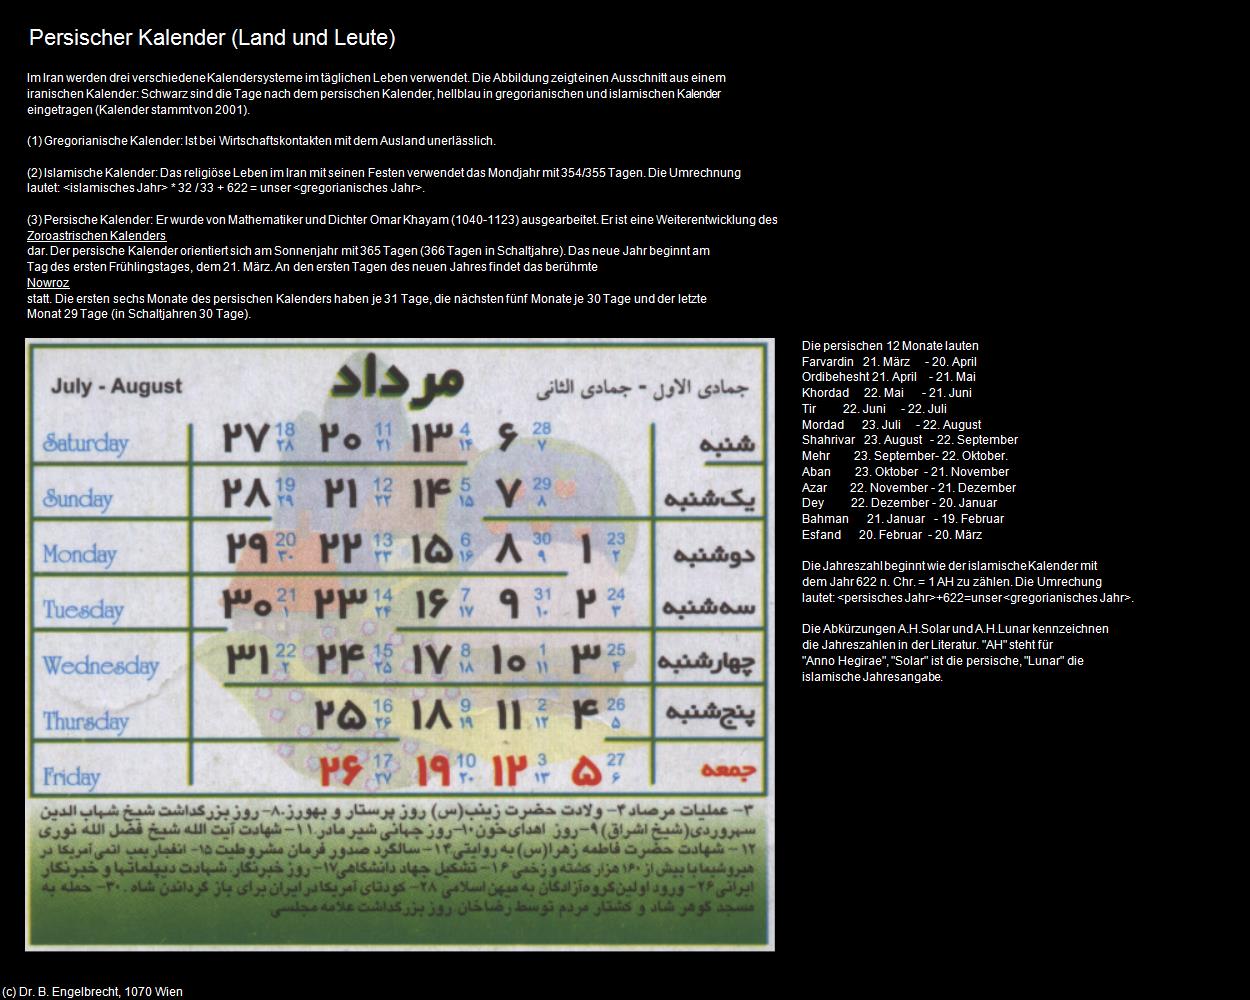 Kalender (IRAN-Land und Leute) in Iran(c)B.Engelbrecht